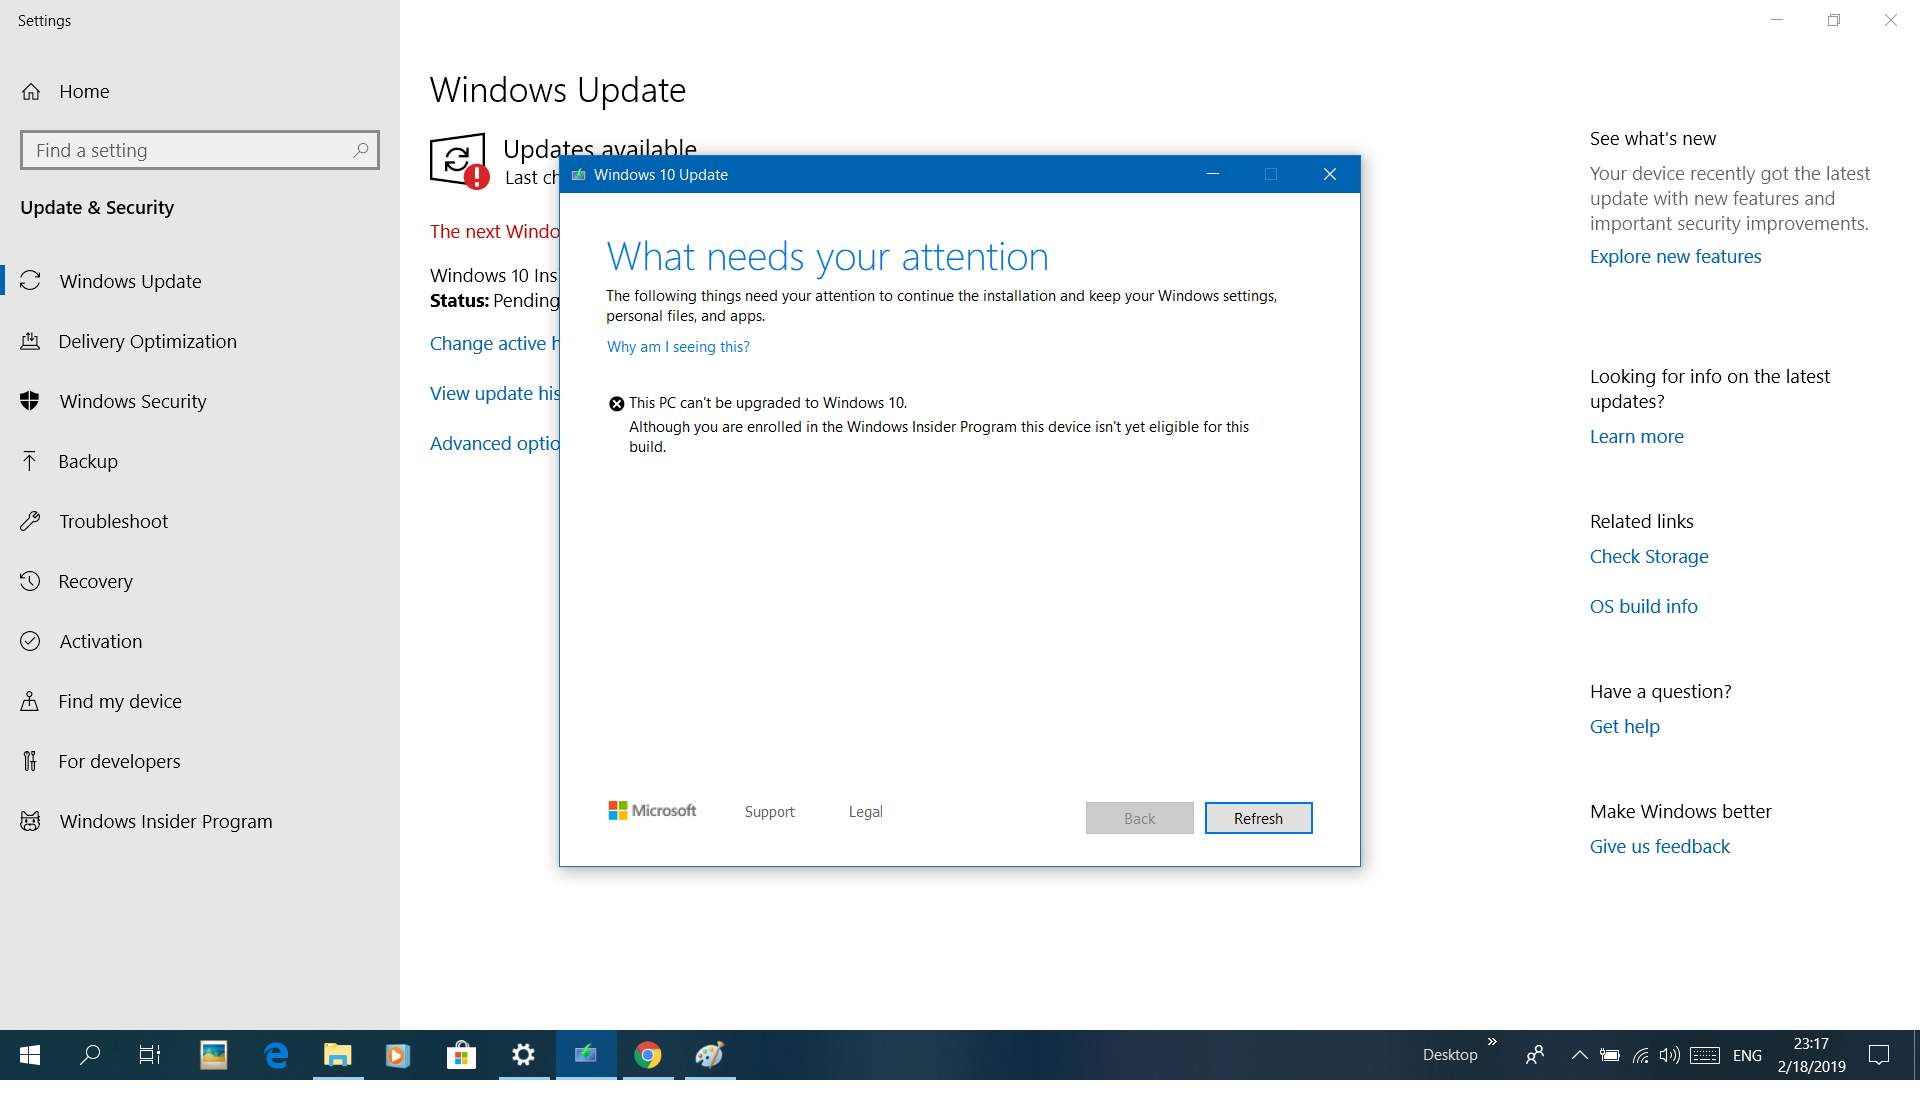 Windows 10 update problem 9cd68fe0-8c1f-4c9e-a06e-c62f2bc2d0c8?upload=true.png